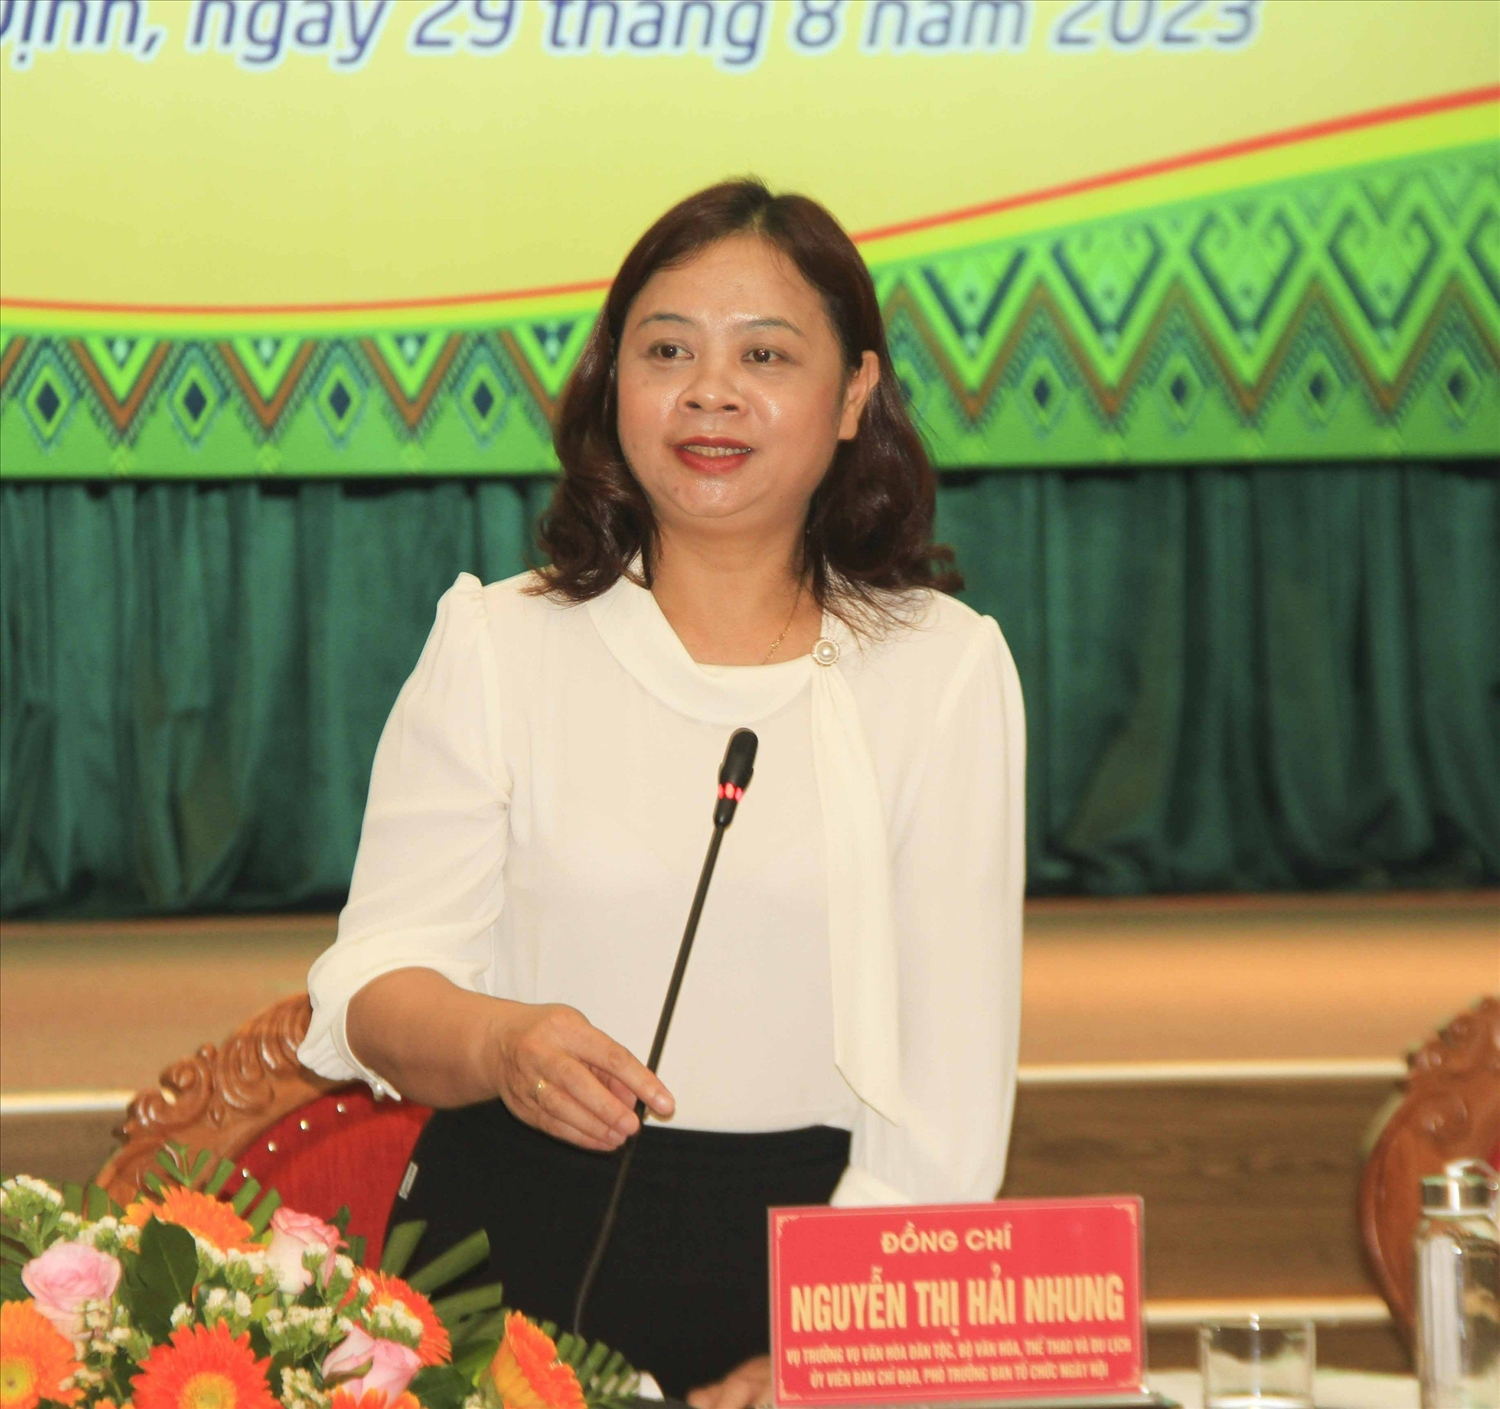 Vụ trưởng Vụ Văn hóa dân tộc (Bộ VHTT&DL) - Phó Trưởng Ban Tổ chức Ngày hội Nguyễn Thị Hải Nhung thông tin tại cuộc Họp báo